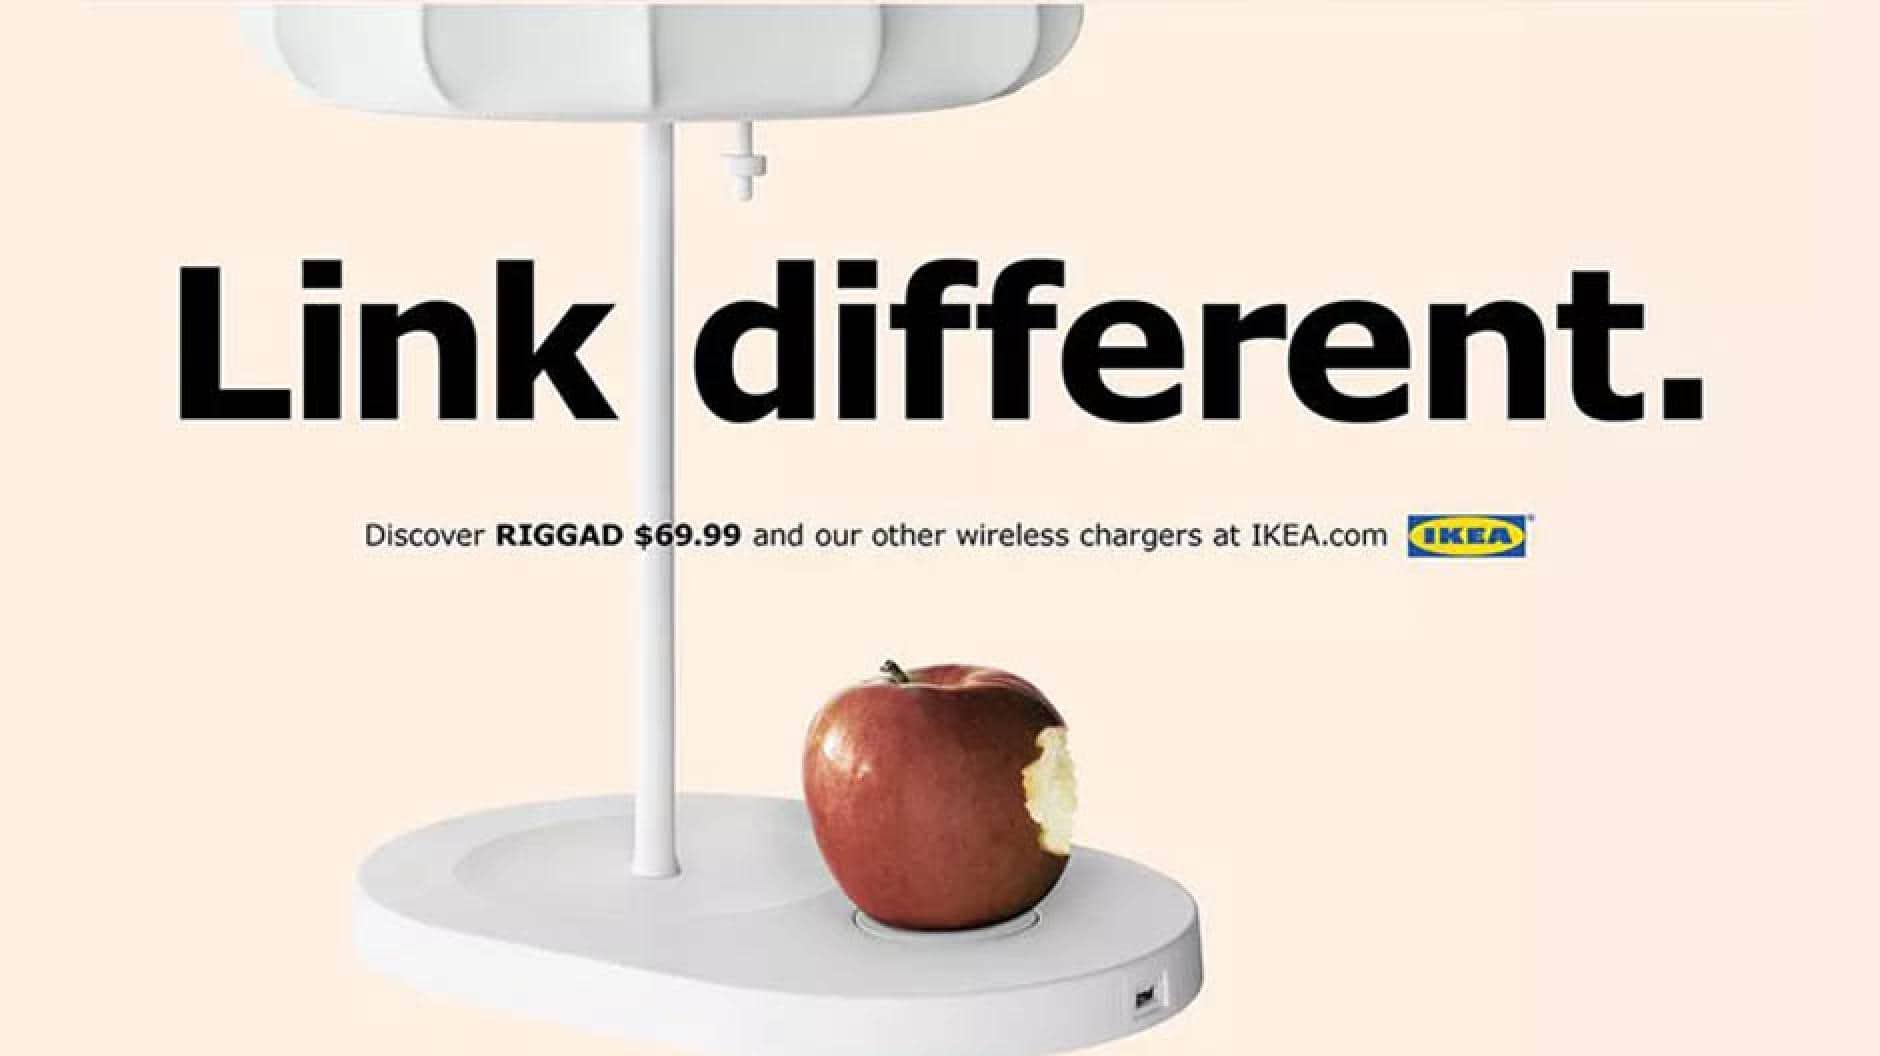 verzekering Joseph Banks Laatste Lachen! IKEA verzint grappige inhakers over draadloos opladen bij Apple